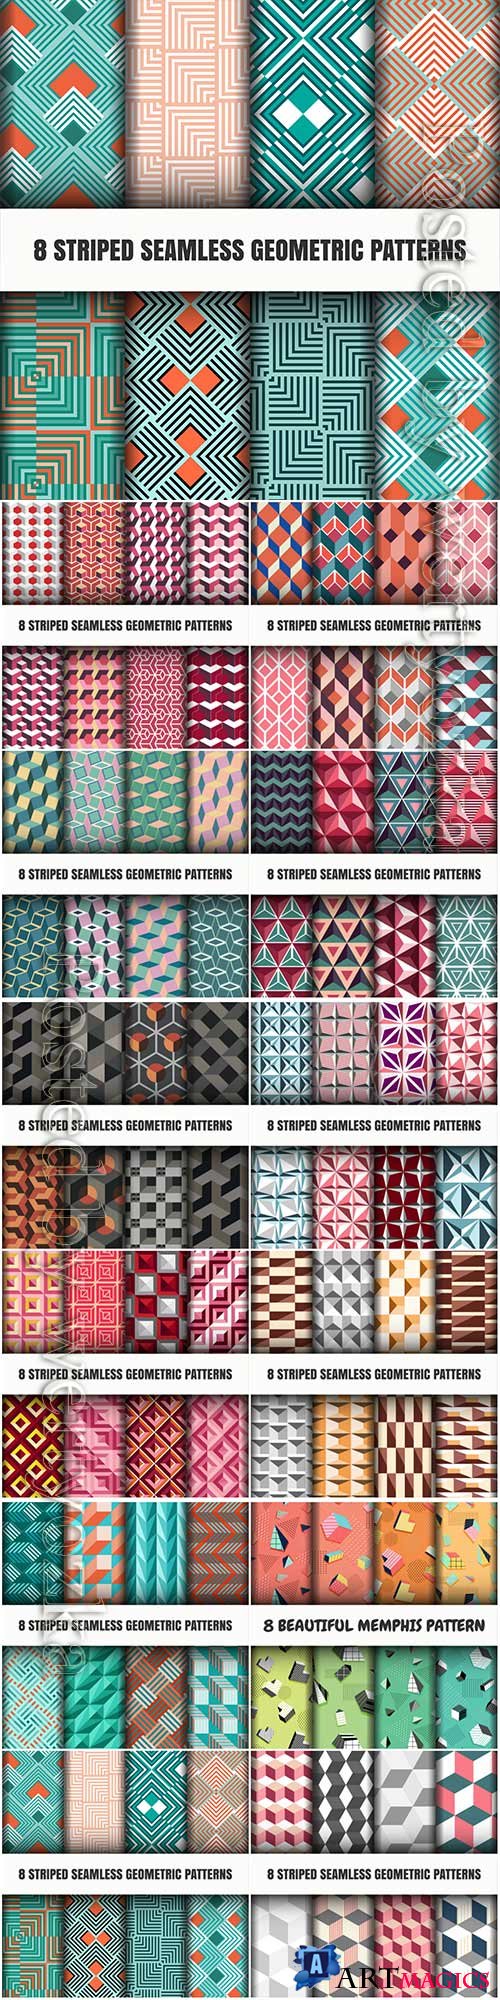 Set of striped seamless geometric patterns